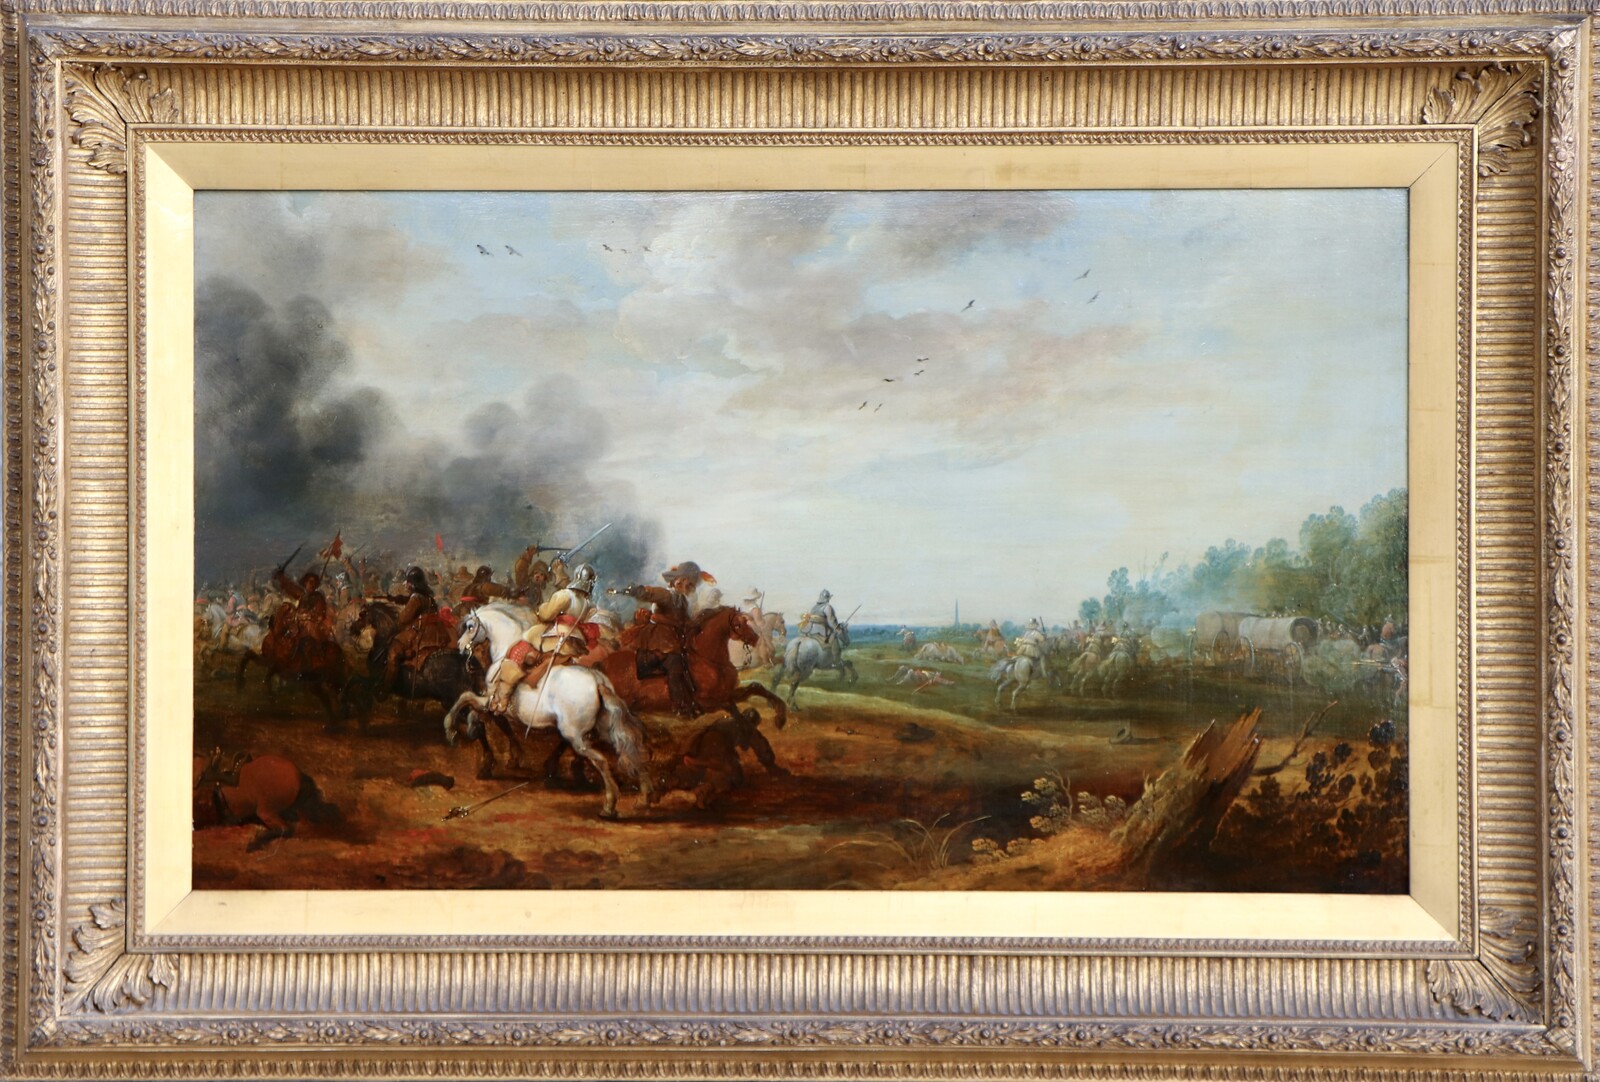 A cavalry battle between Dutch and Spanish horsemen